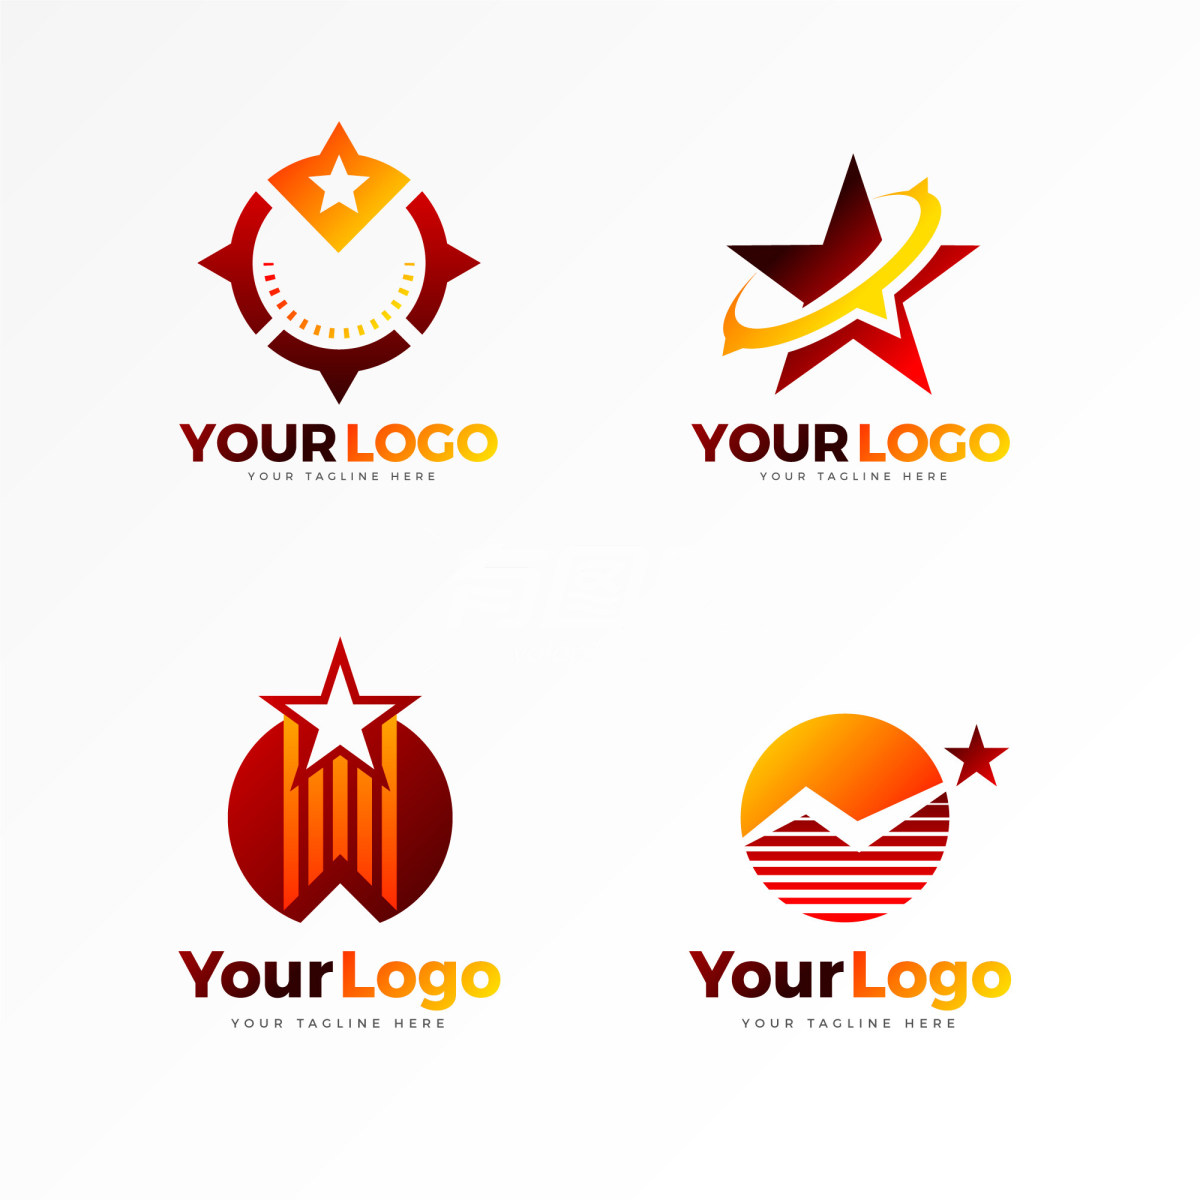 不同设计的logo集合